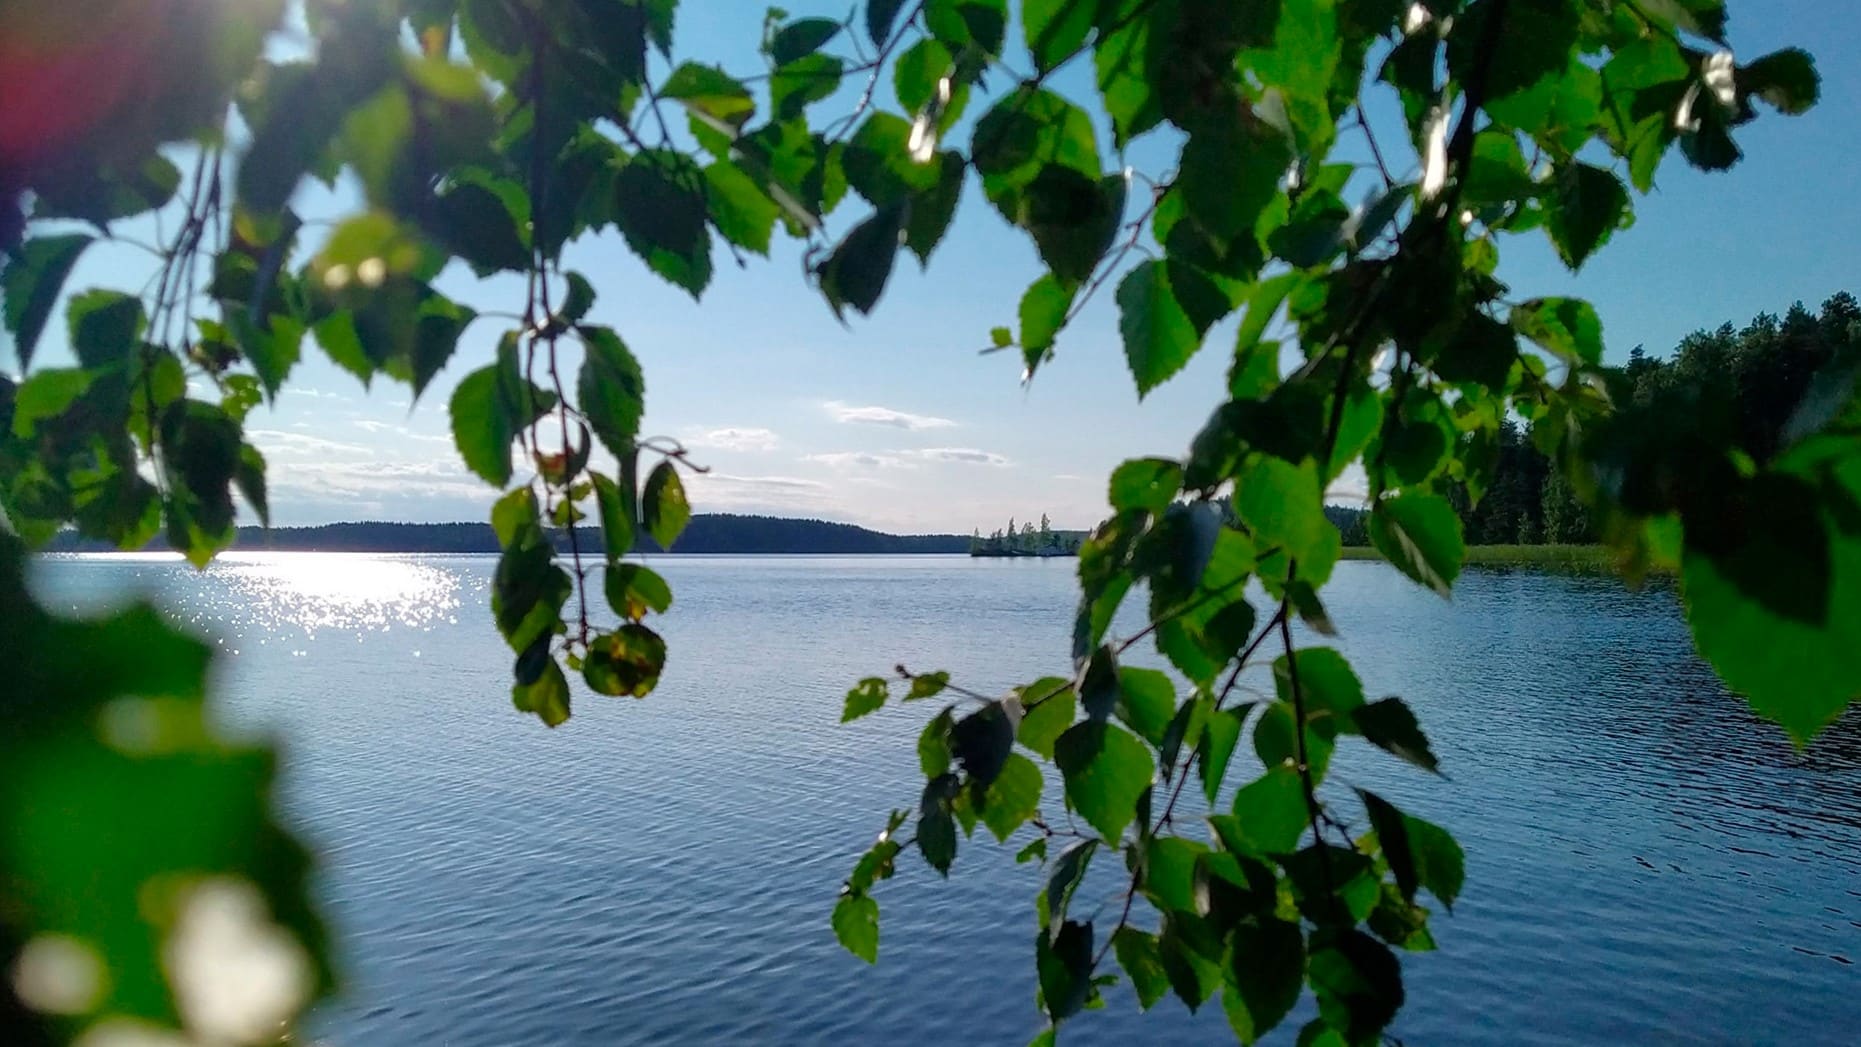 Kesäinen järvimaisema Saimaalta ja koivun oksia etualalla